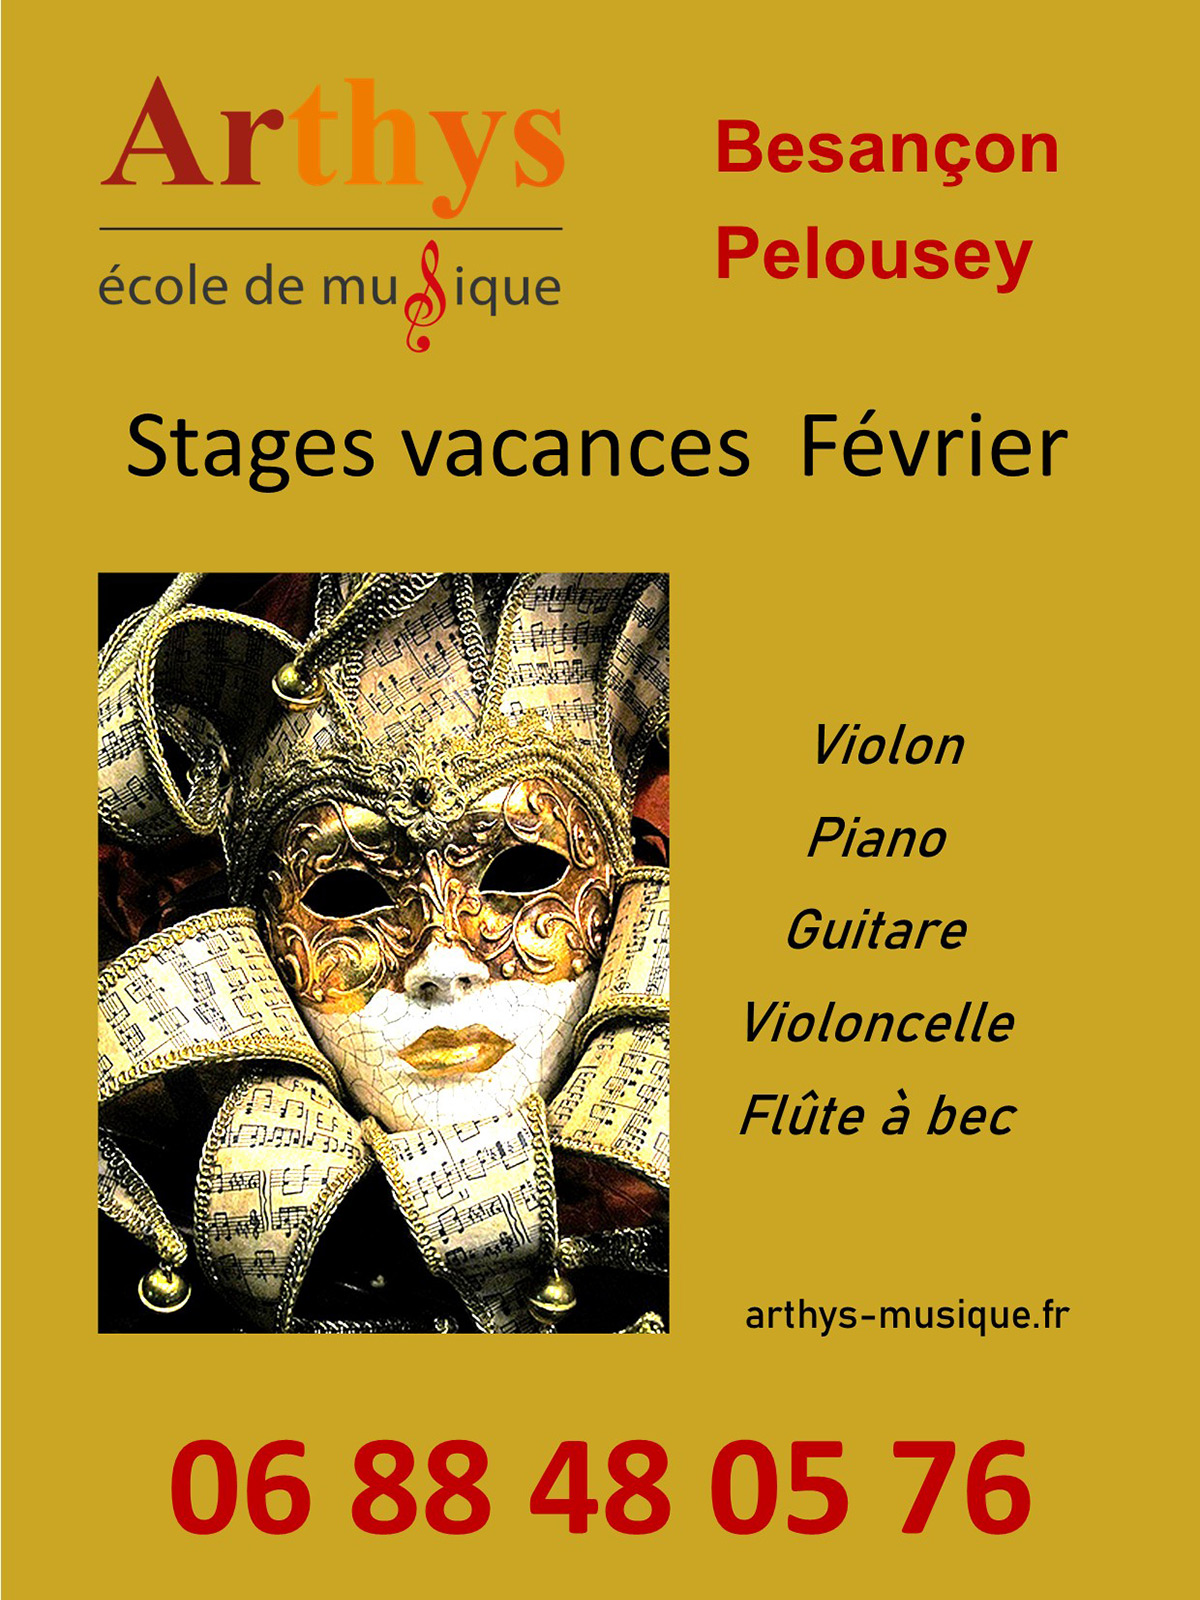 Stages aux vacances de de février à l 'école de musique Arthys à Besançon ou Pelousey